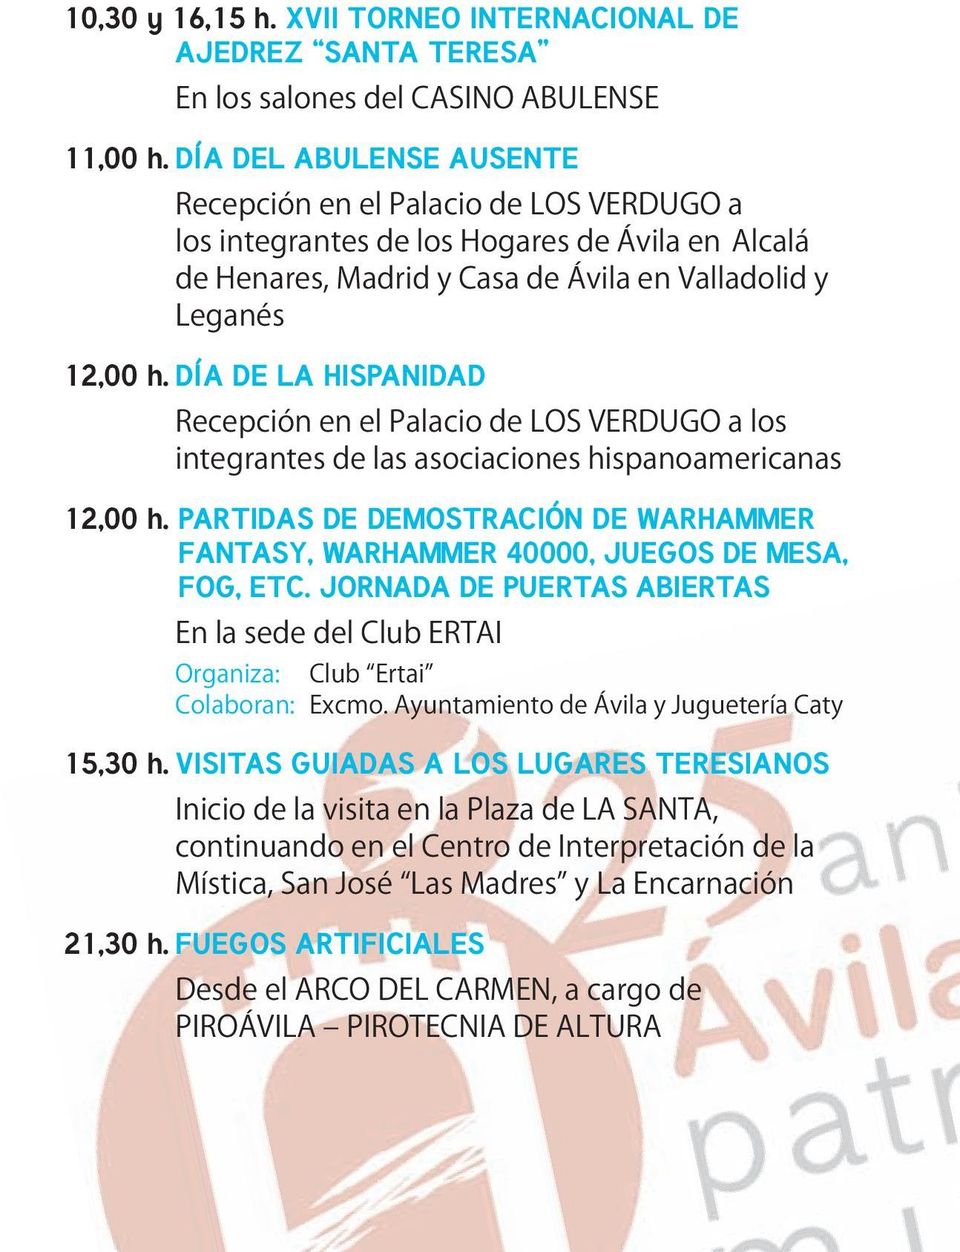 DÍA DE LA HISPANIDAD Recepción en el Palacio de LOS VERDUGO a los integrantes de las asociaciones hispanoamericanas 12,00 h.